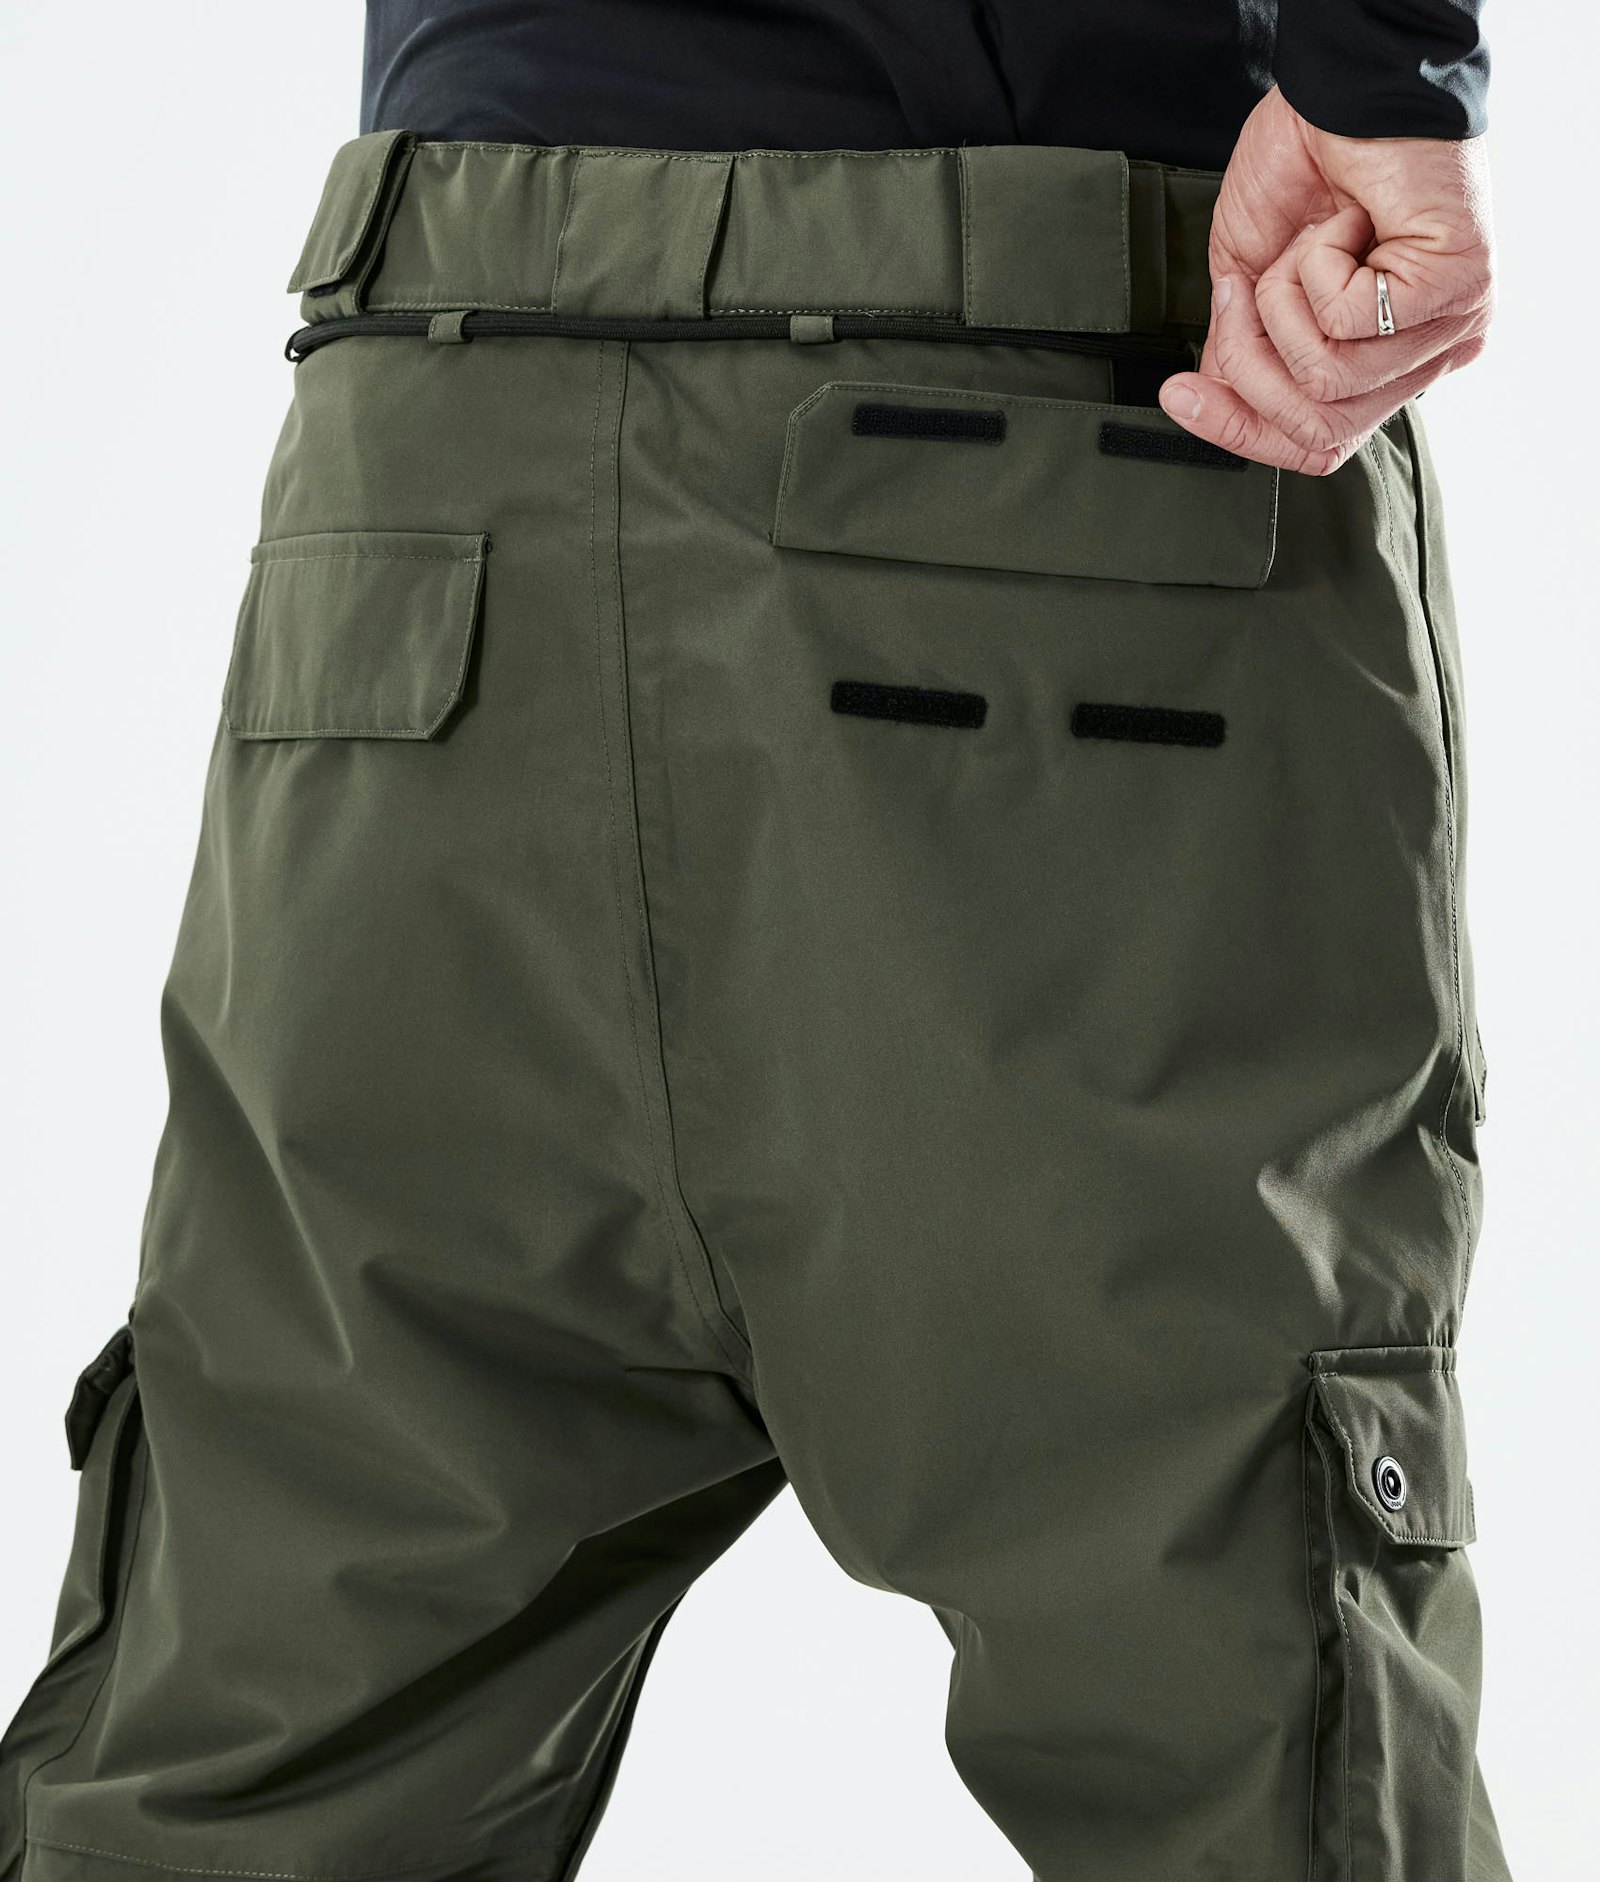 SNOW Men's Harem Pants For Winter (Black, Green) - XS / Short / Green